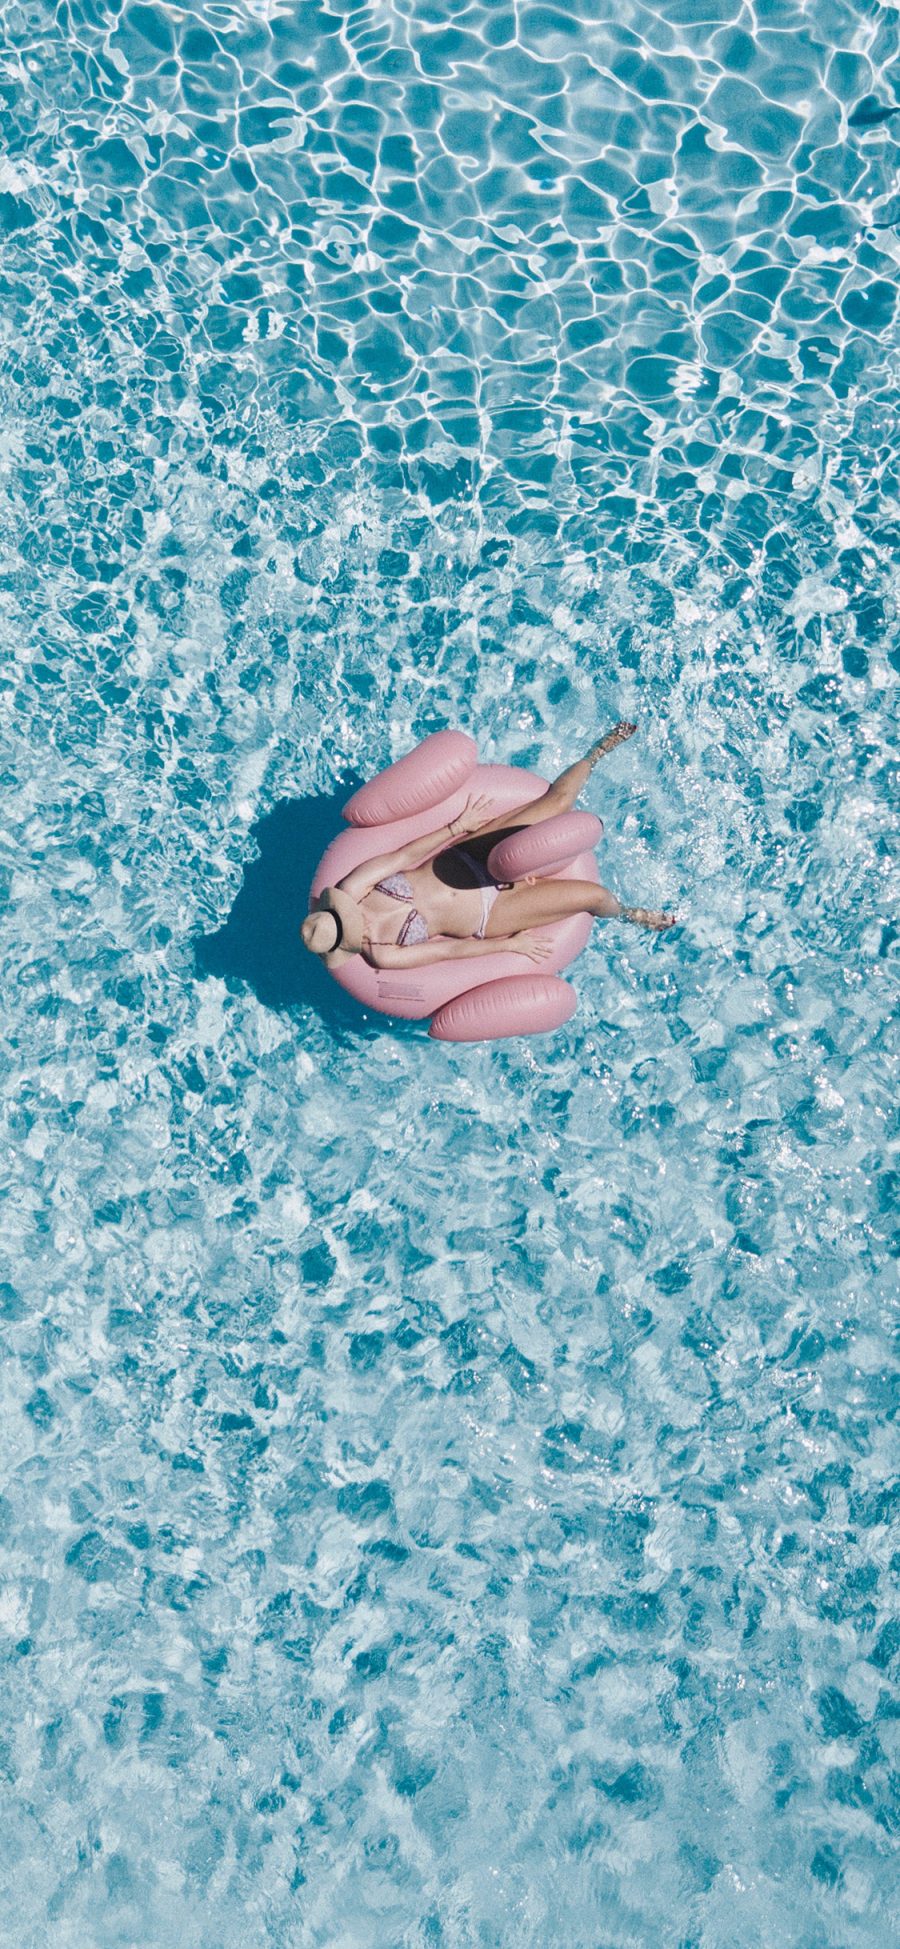 [2436×1125]俯拍 泳池 泳圈 比基尼 女孩 苹果手机壁纸图片